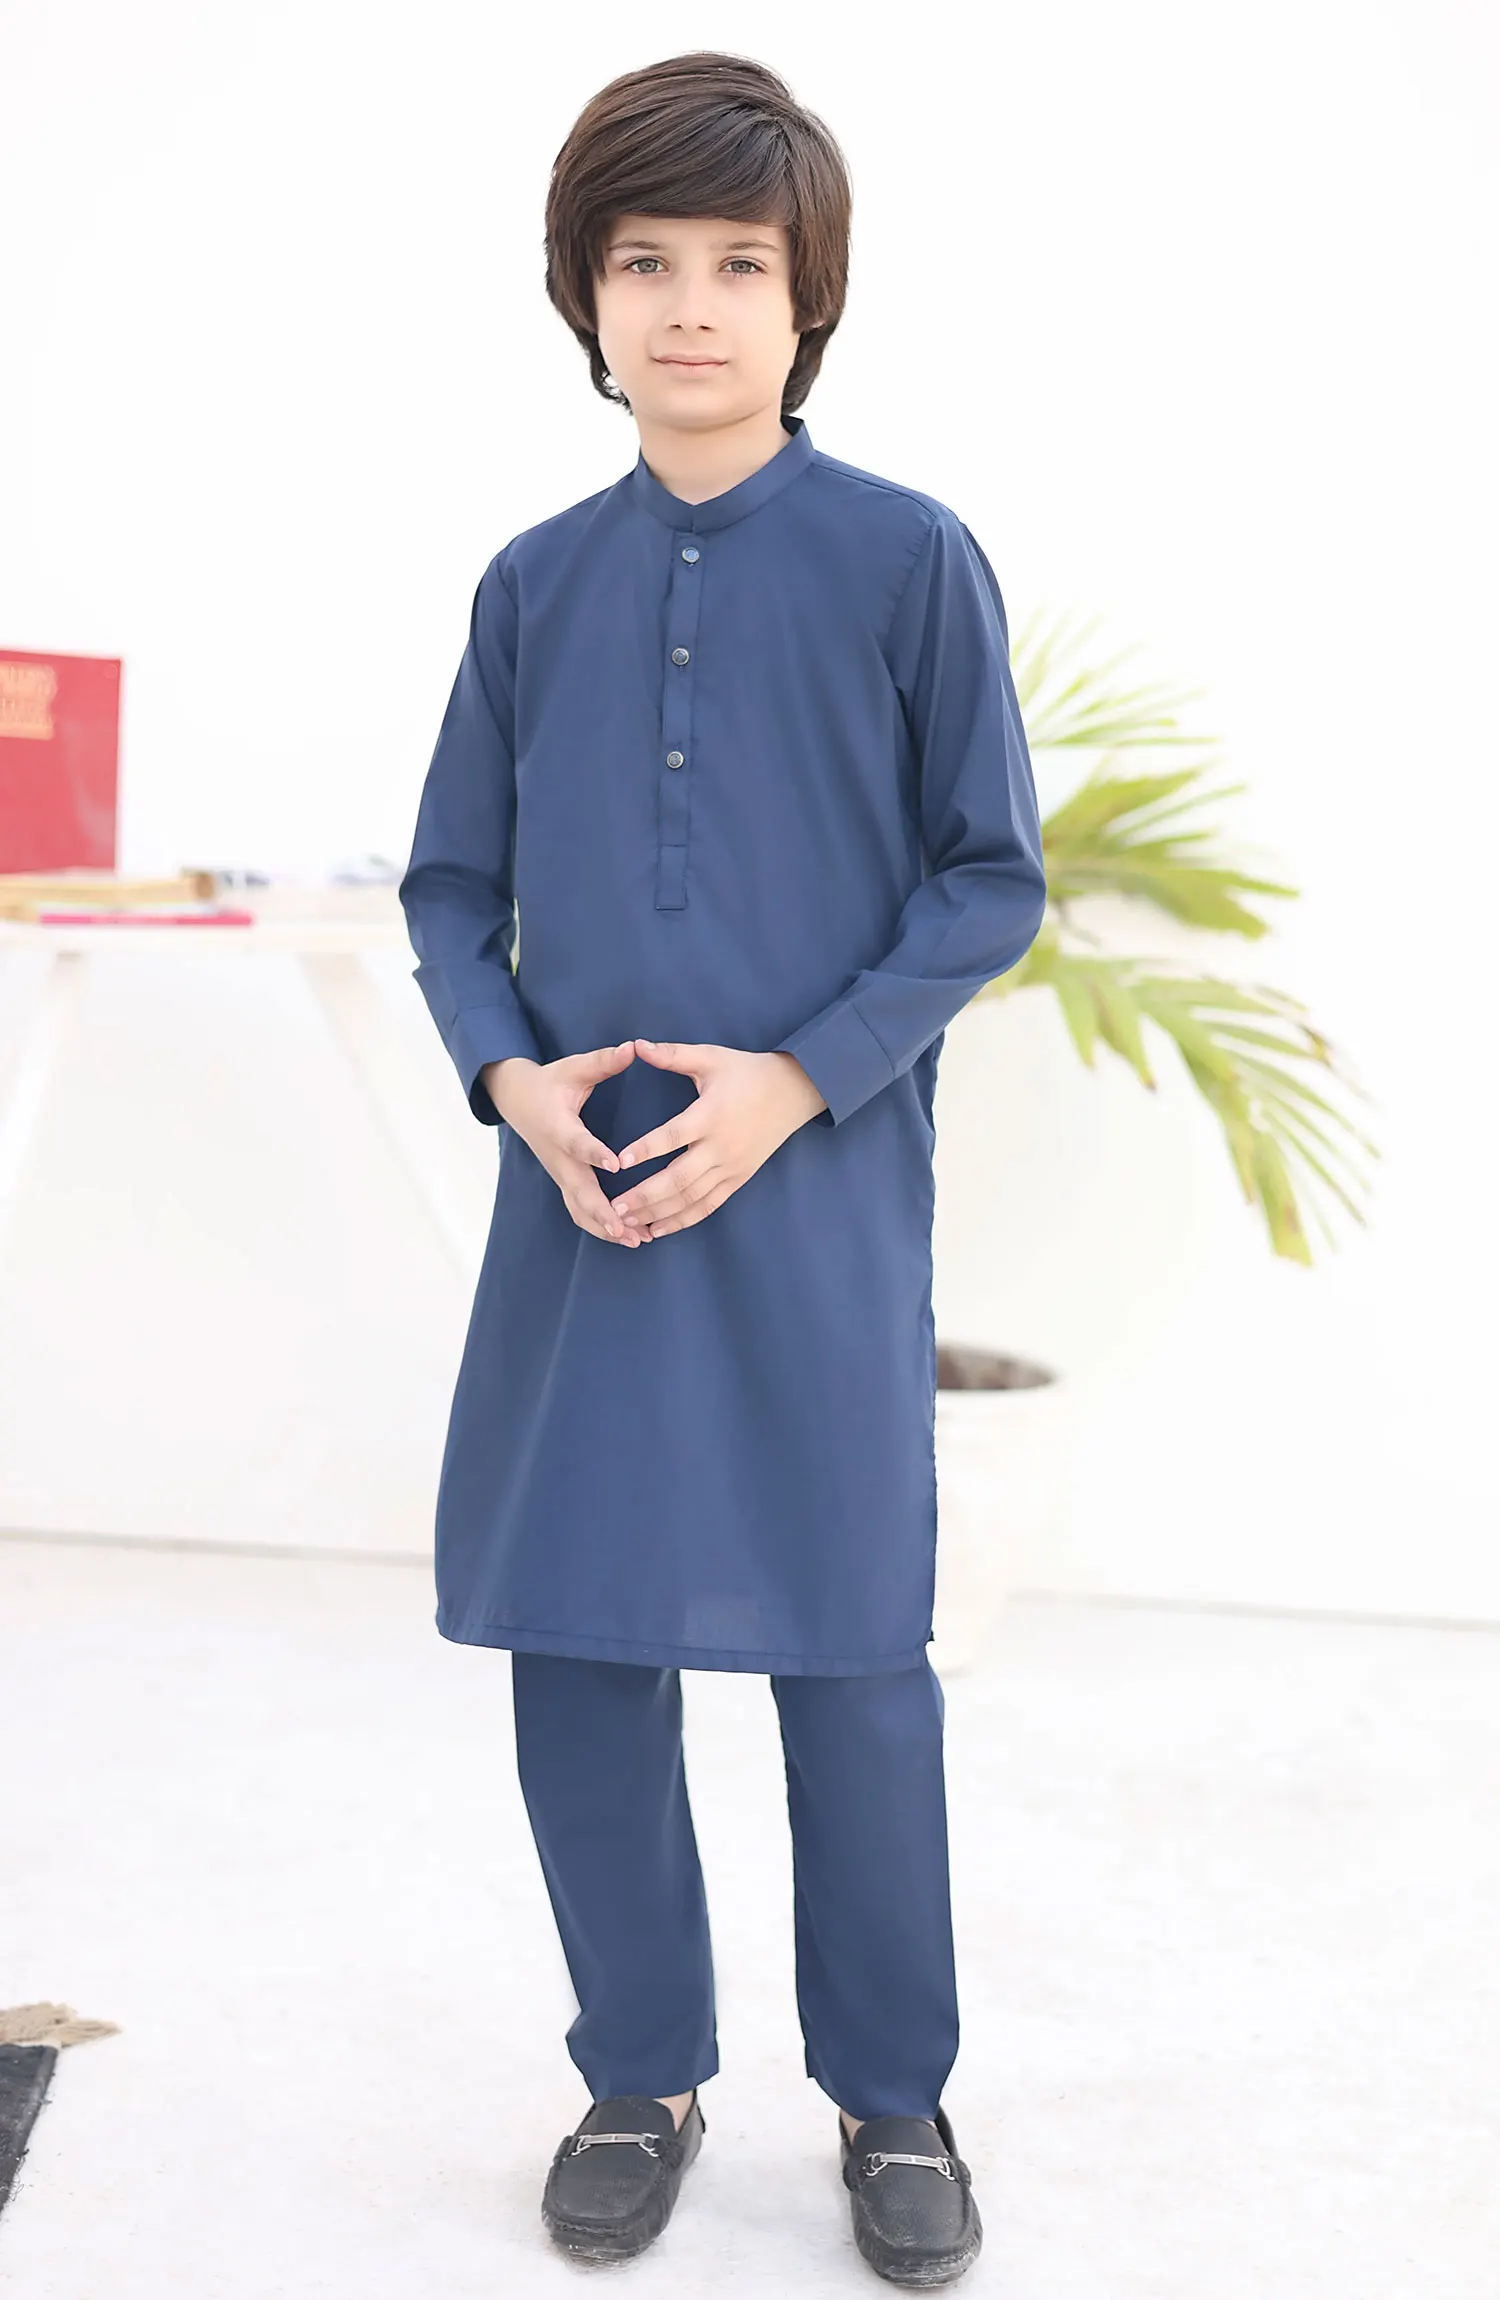 Ramazan Edit Vol 01 - KT 10 Indigo Blue